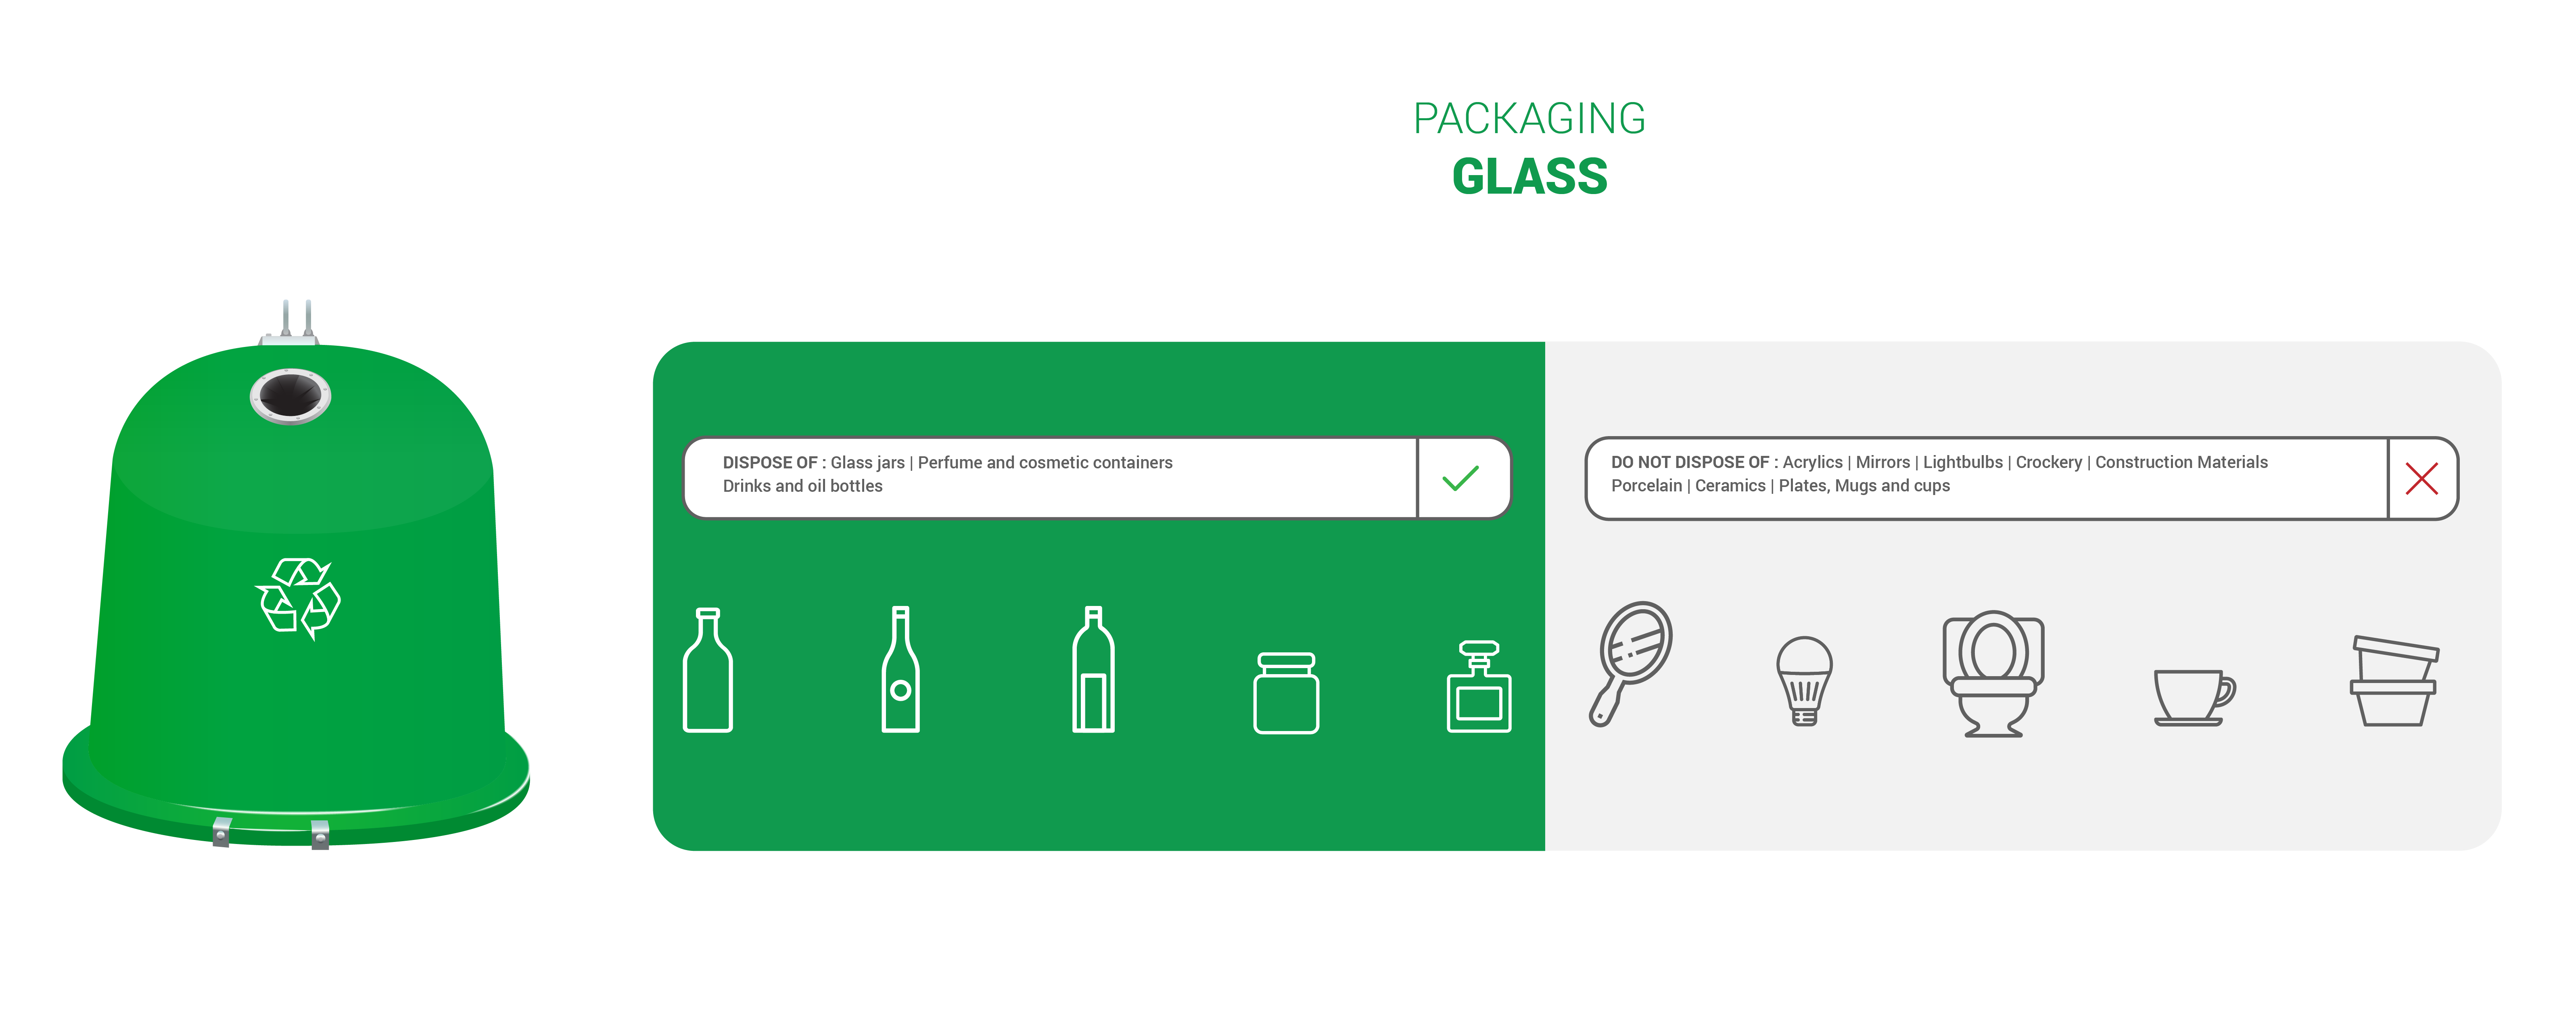 Green recycling bin – Glass